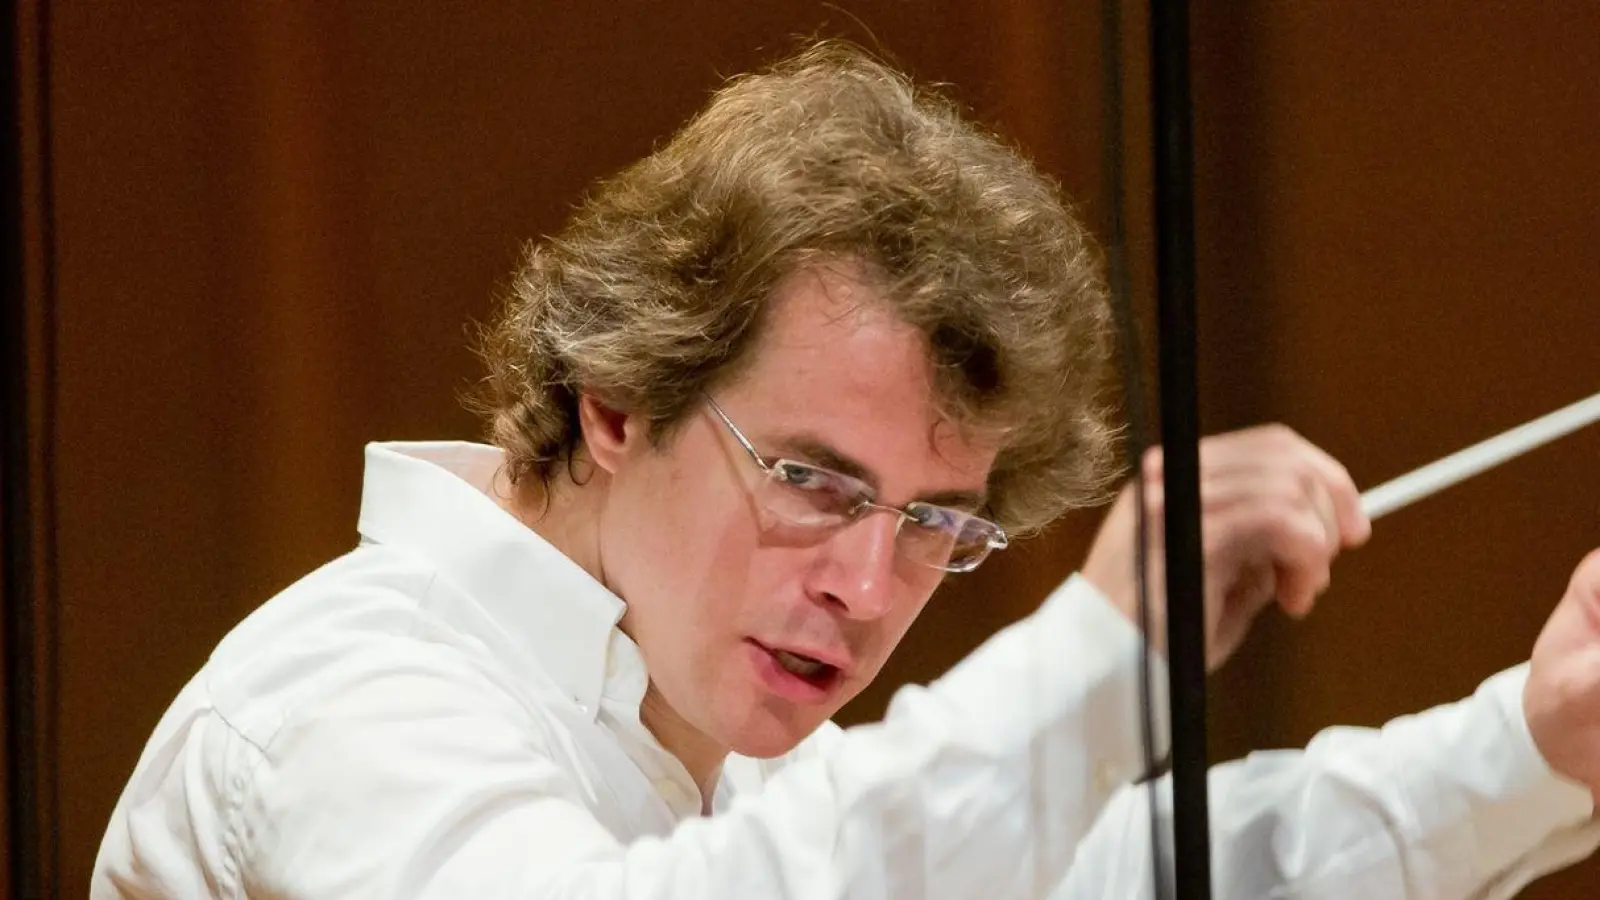 Der Chefdirigent der Bamberger Symphoniker, <br>Jakub Hrůša während einer Orchesterprobe. (Foto: Daniel Karmann/dpa)